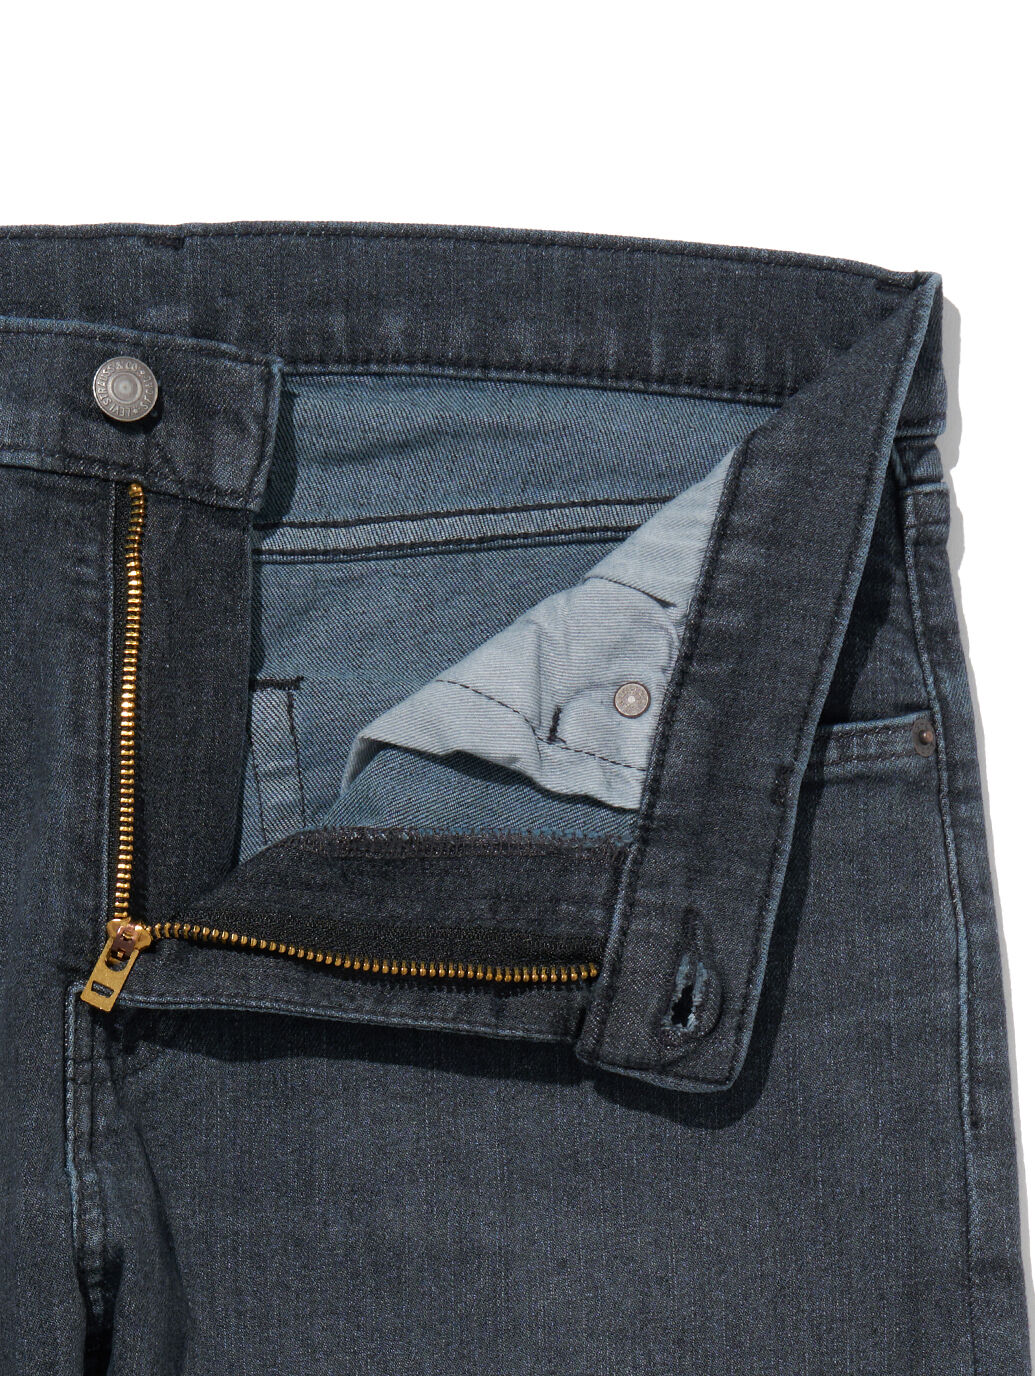 Flex Jeans 512™ スリムテーパードジーンズ ブラック RICHMOND ...